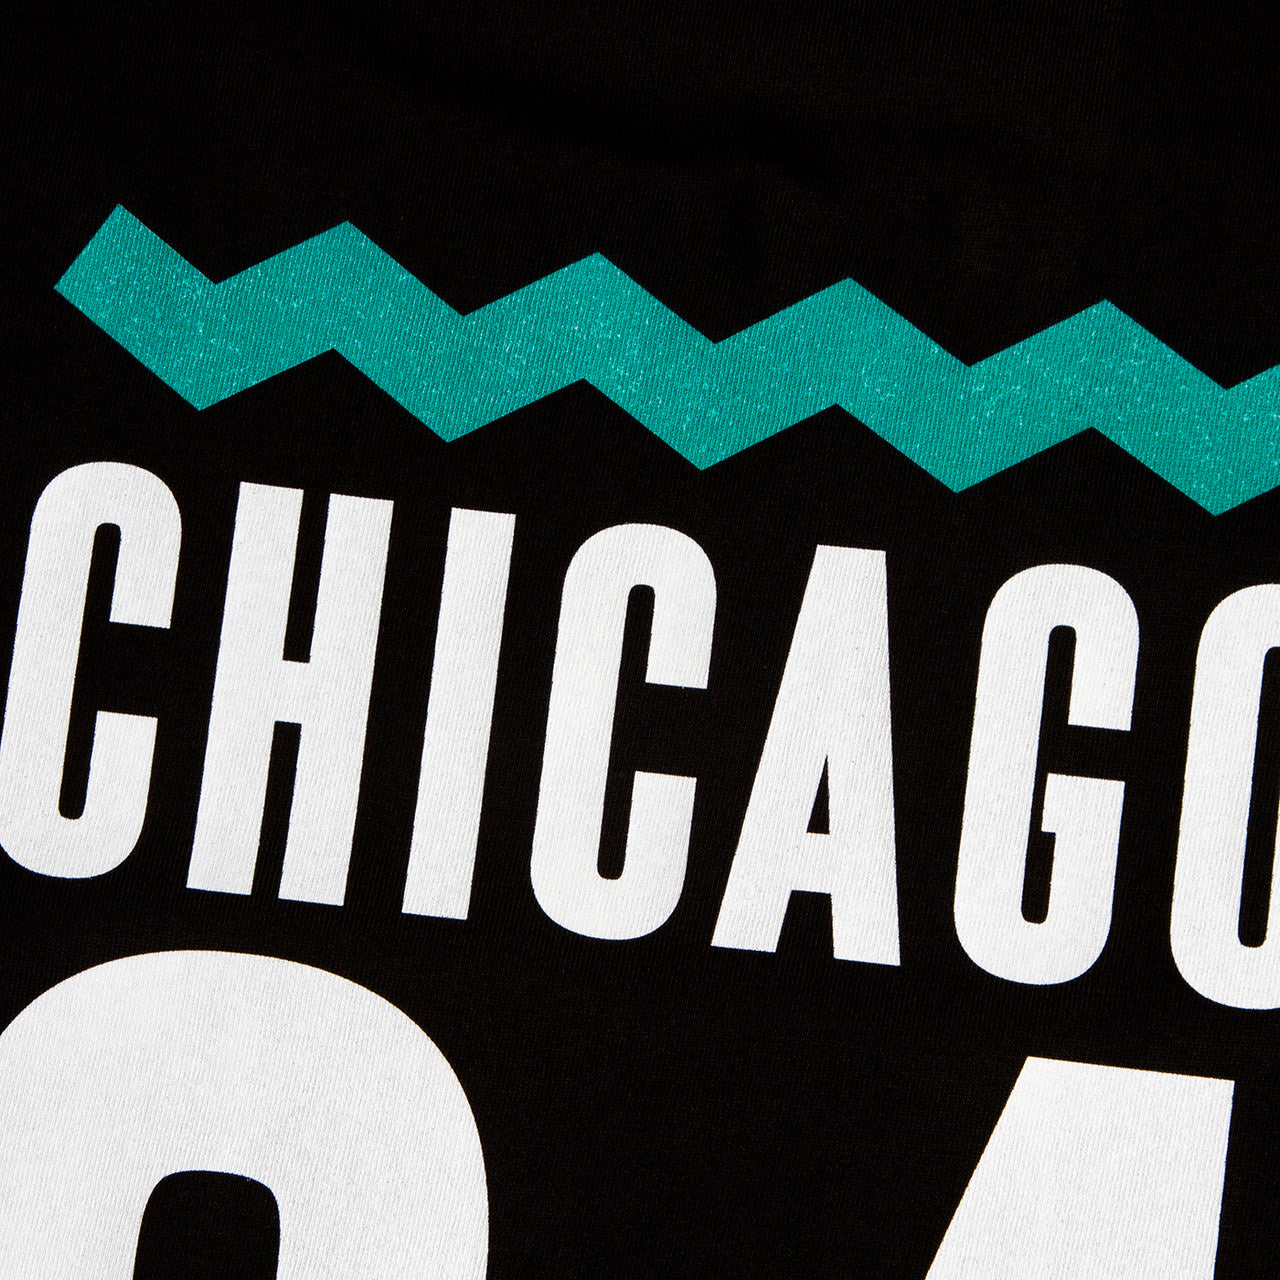 Chicago 84 Back Print - Tshirt - Black